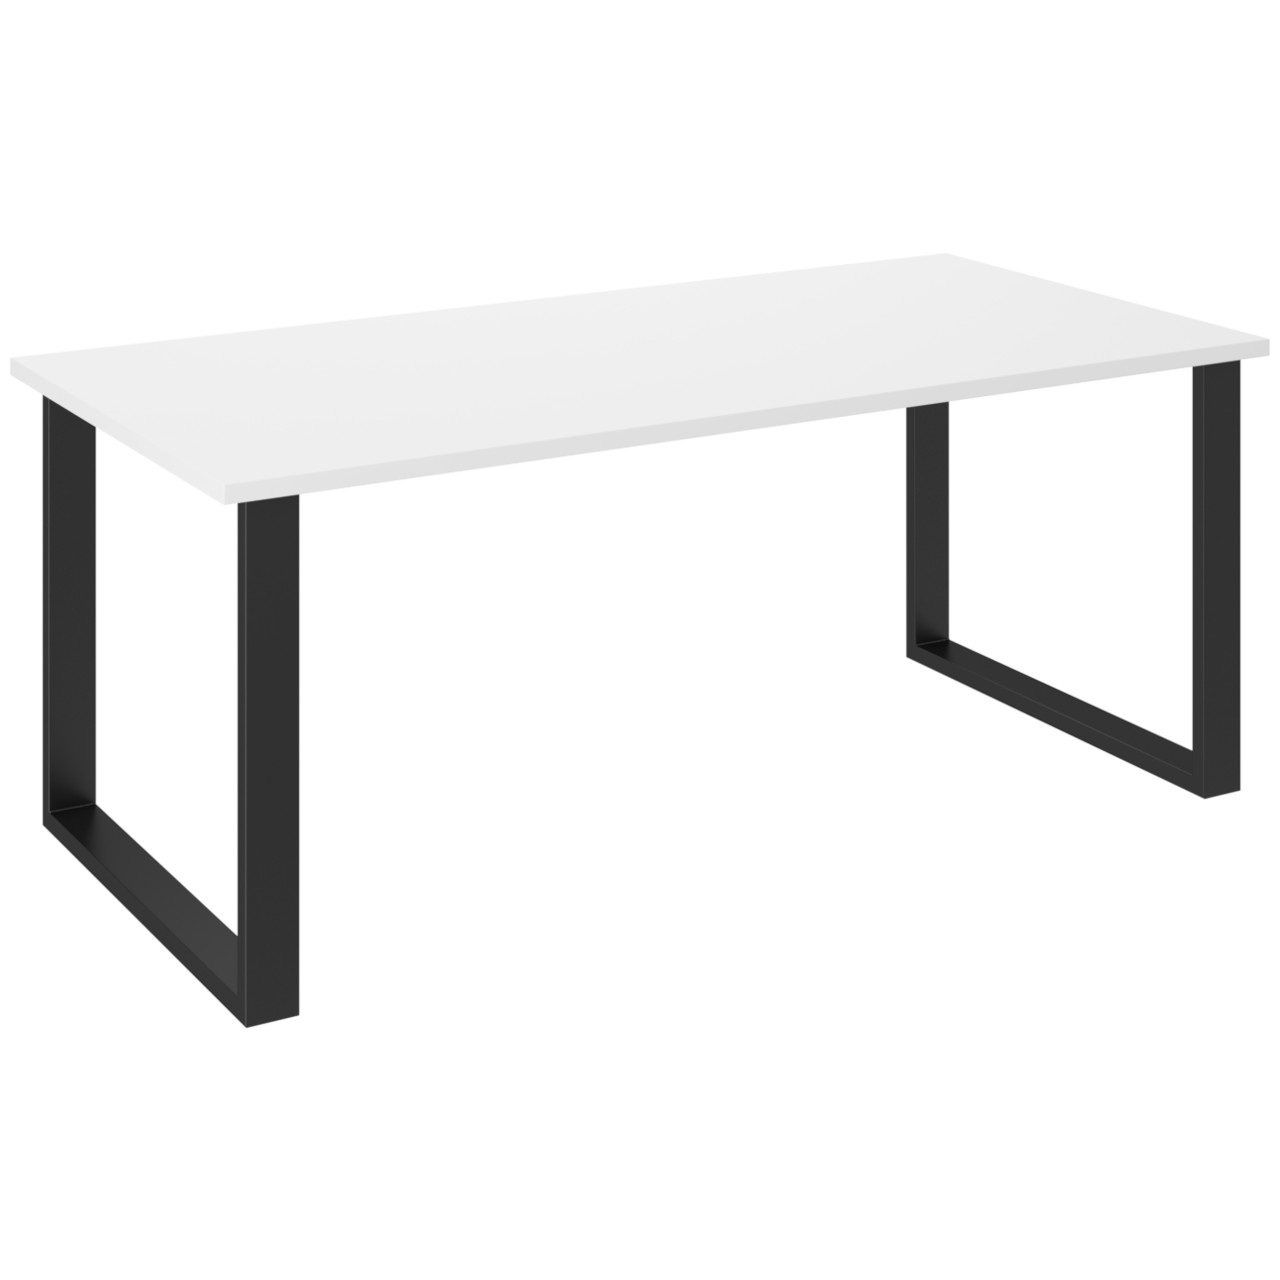 Stůl PERRI 185x90 bílý